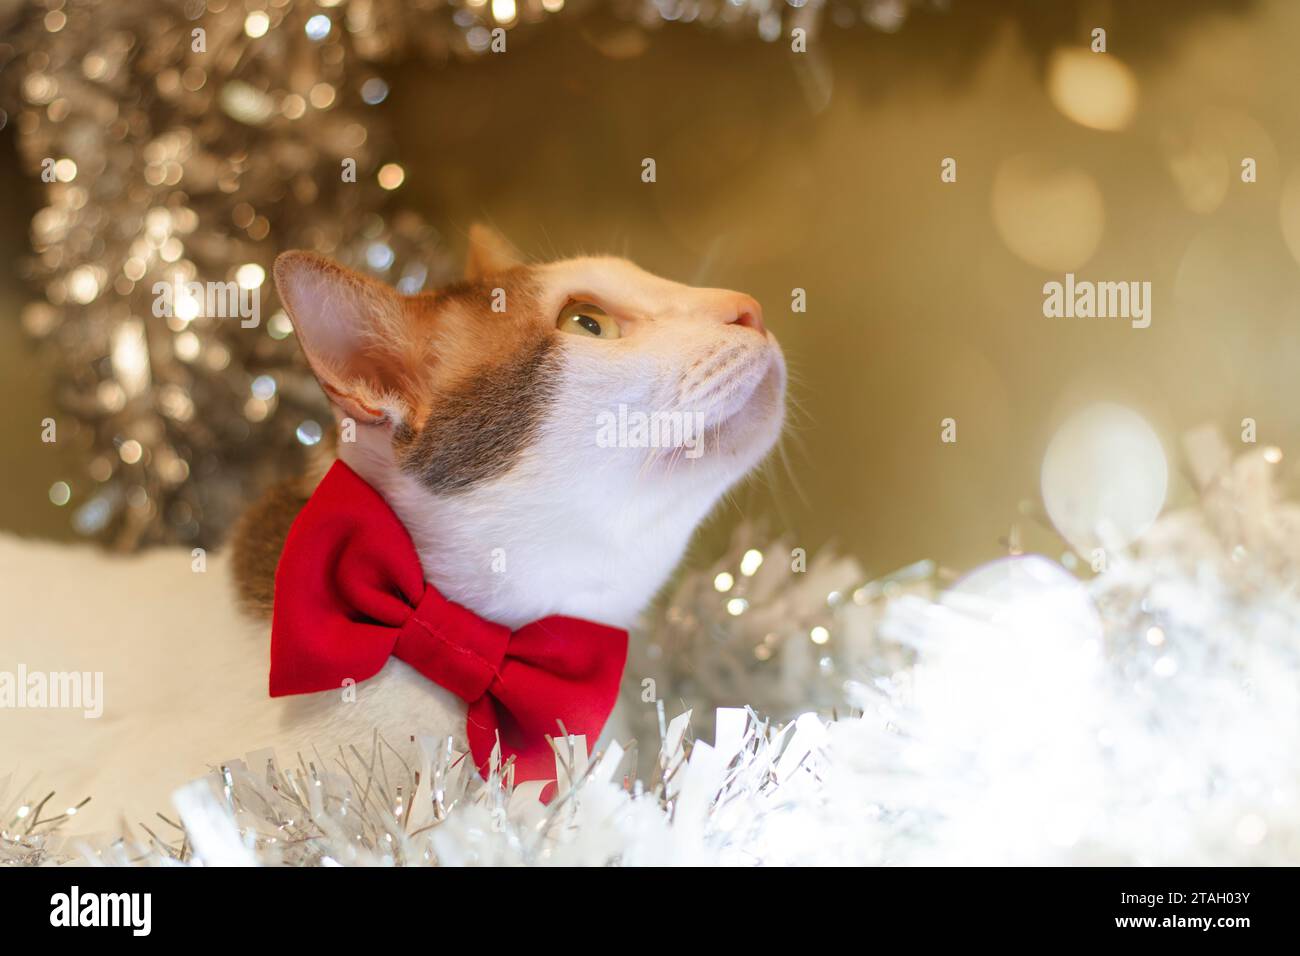 Feiern Sie Weihnachten mit einer weißen Katze, die mit einer roten Schleife gefesselt ist. Wohndekoration, Geschenke, Gebete, warme Inneneinrichtung. Stockfoto